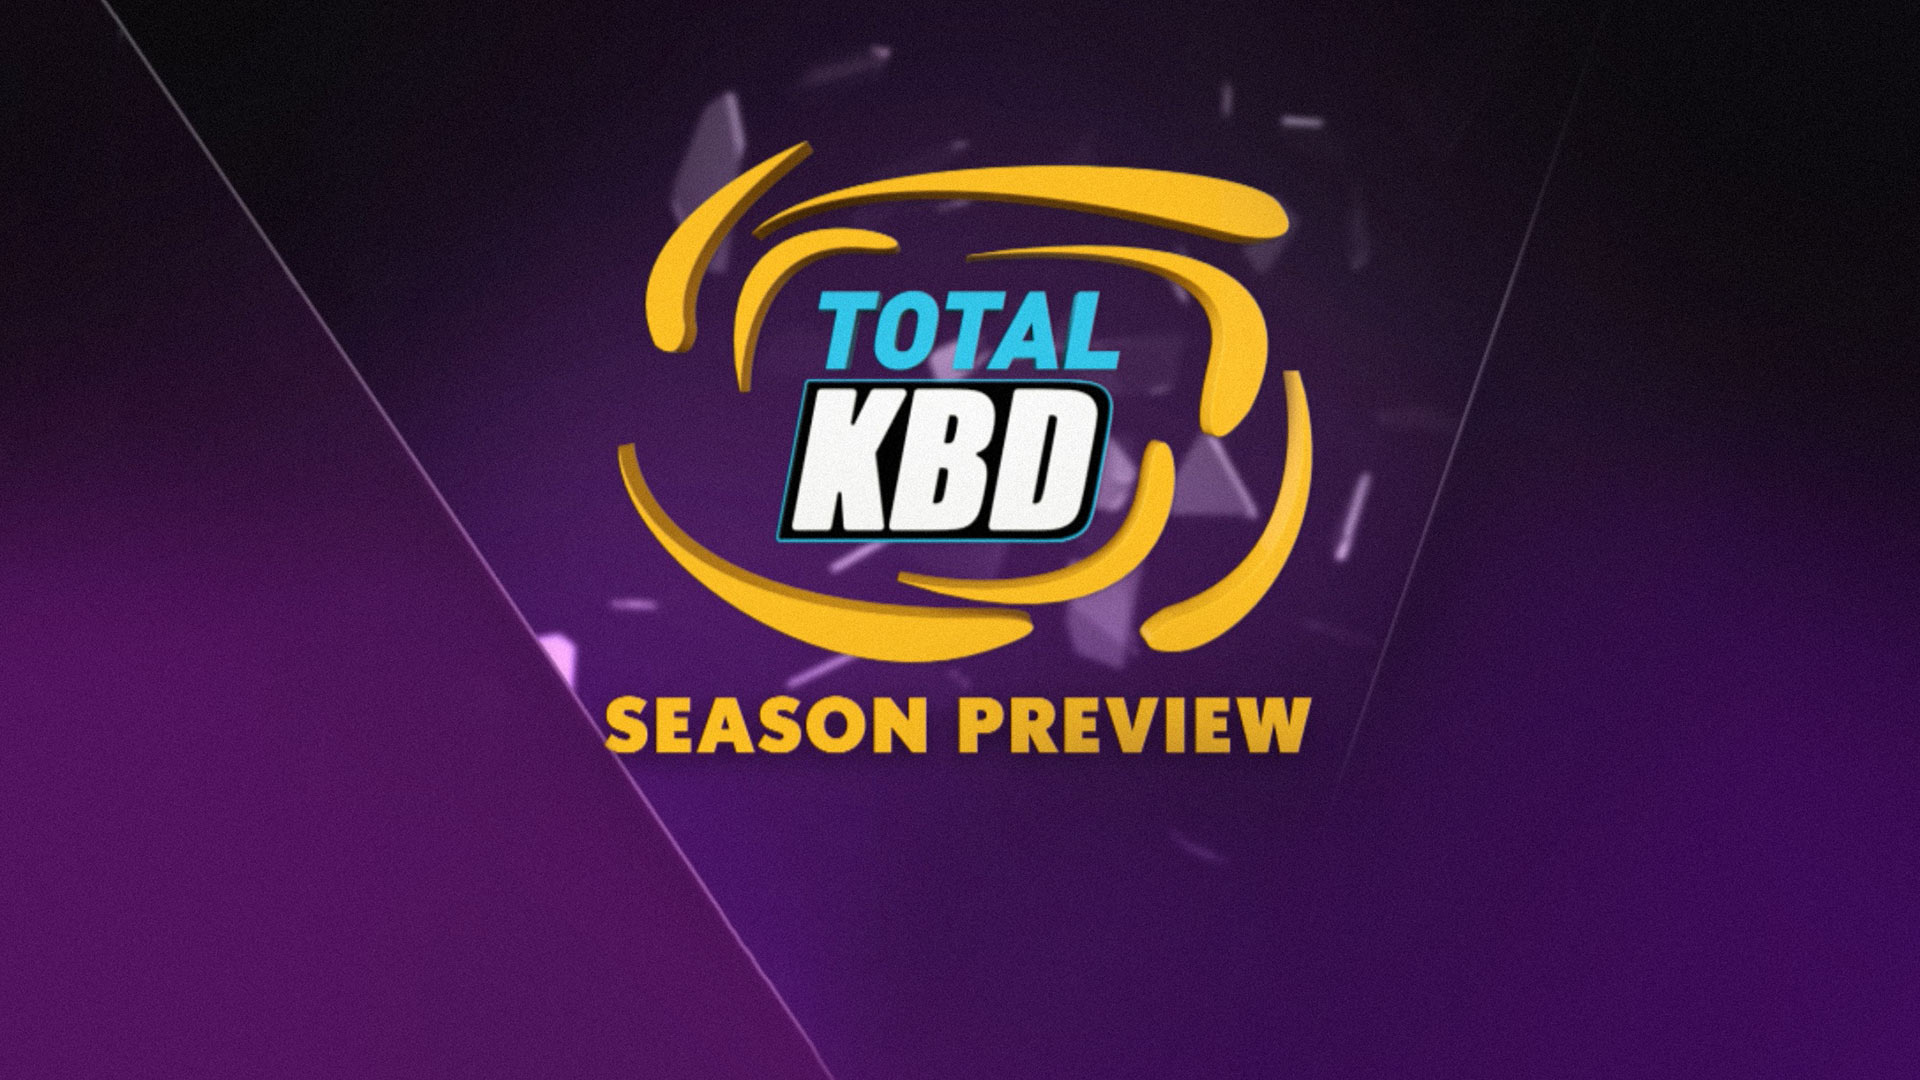 Total KBD- Season Preview 2019 Hindi